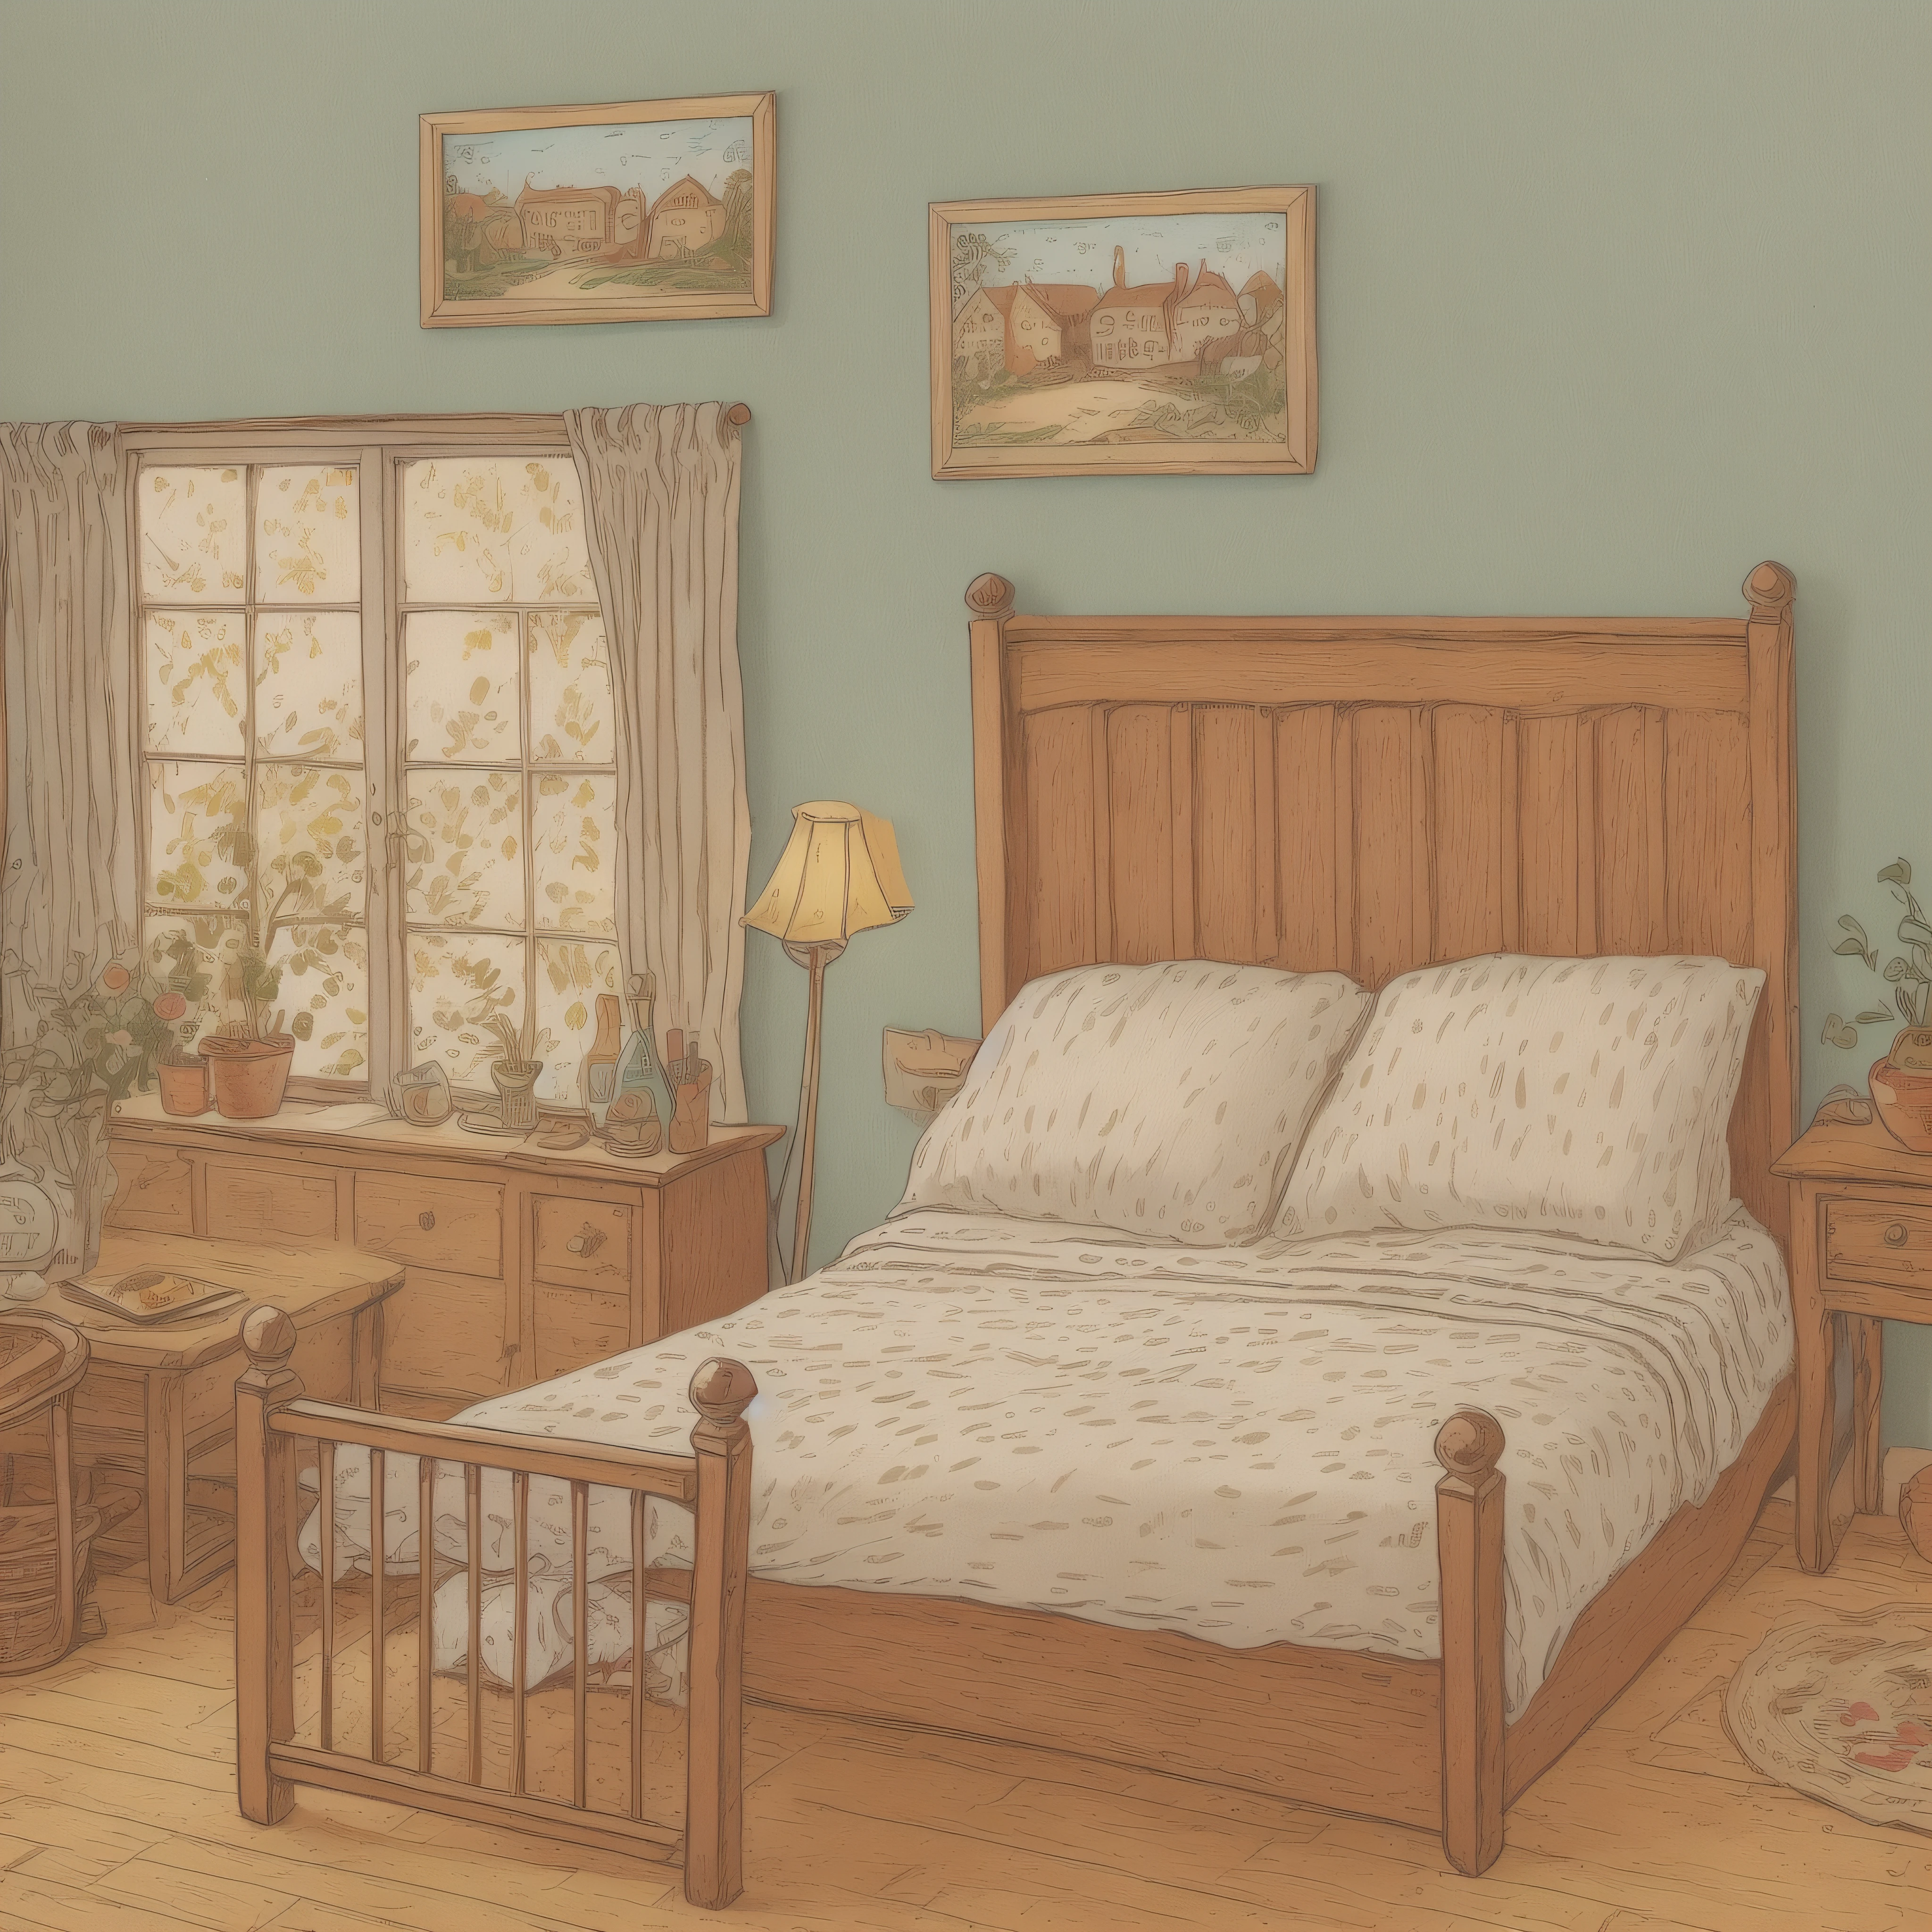 어린이 그림책 삽화, 마을 여관의 침대 2개, 설정 이미지, 귀여운, 컬러 일러스트, 구성 재료, 화려한 색상, 18세기 프랑스,